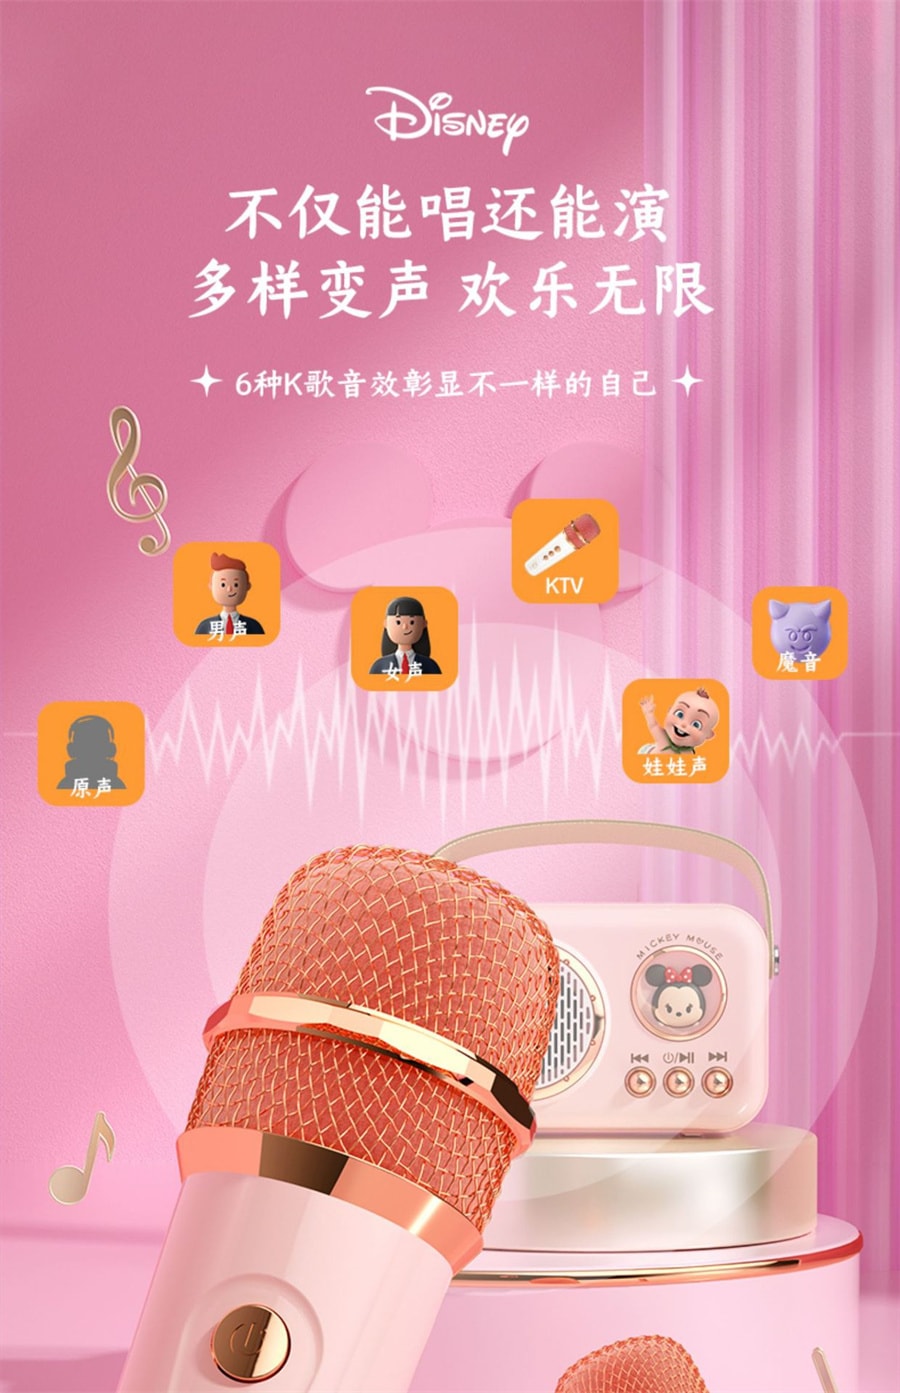 【中国直邮】迪士尼  草莓熊儿童话筒麦克风音箱一体机玩具唱歌机卡拉ok女孩礼物   米奇